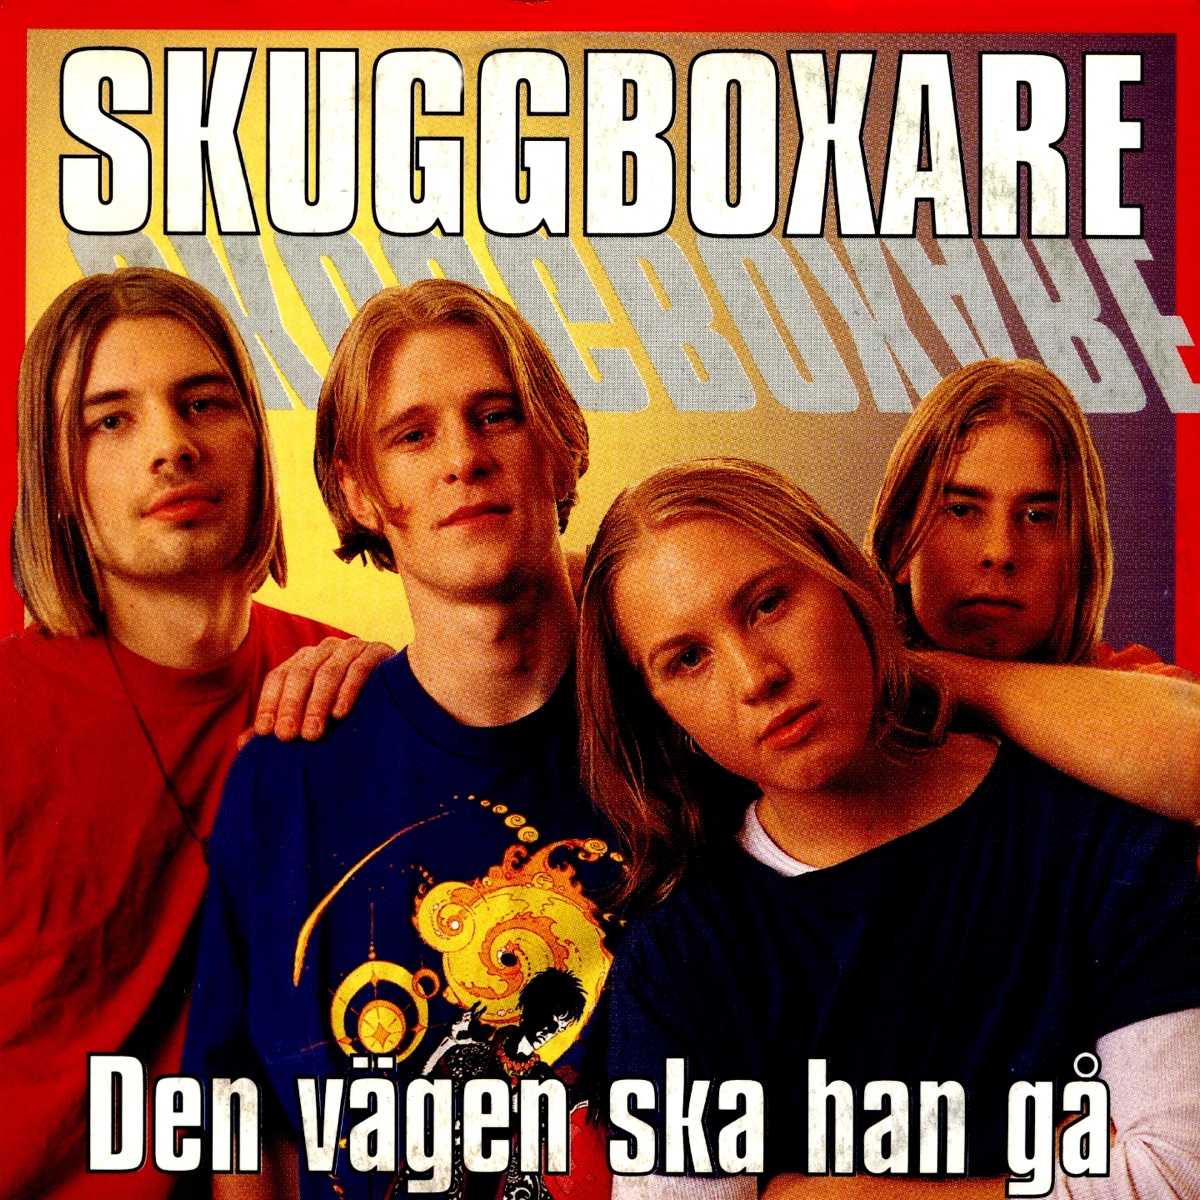 Den vägen ska han gå - Single - Album by Skuggboxare - Apple Music